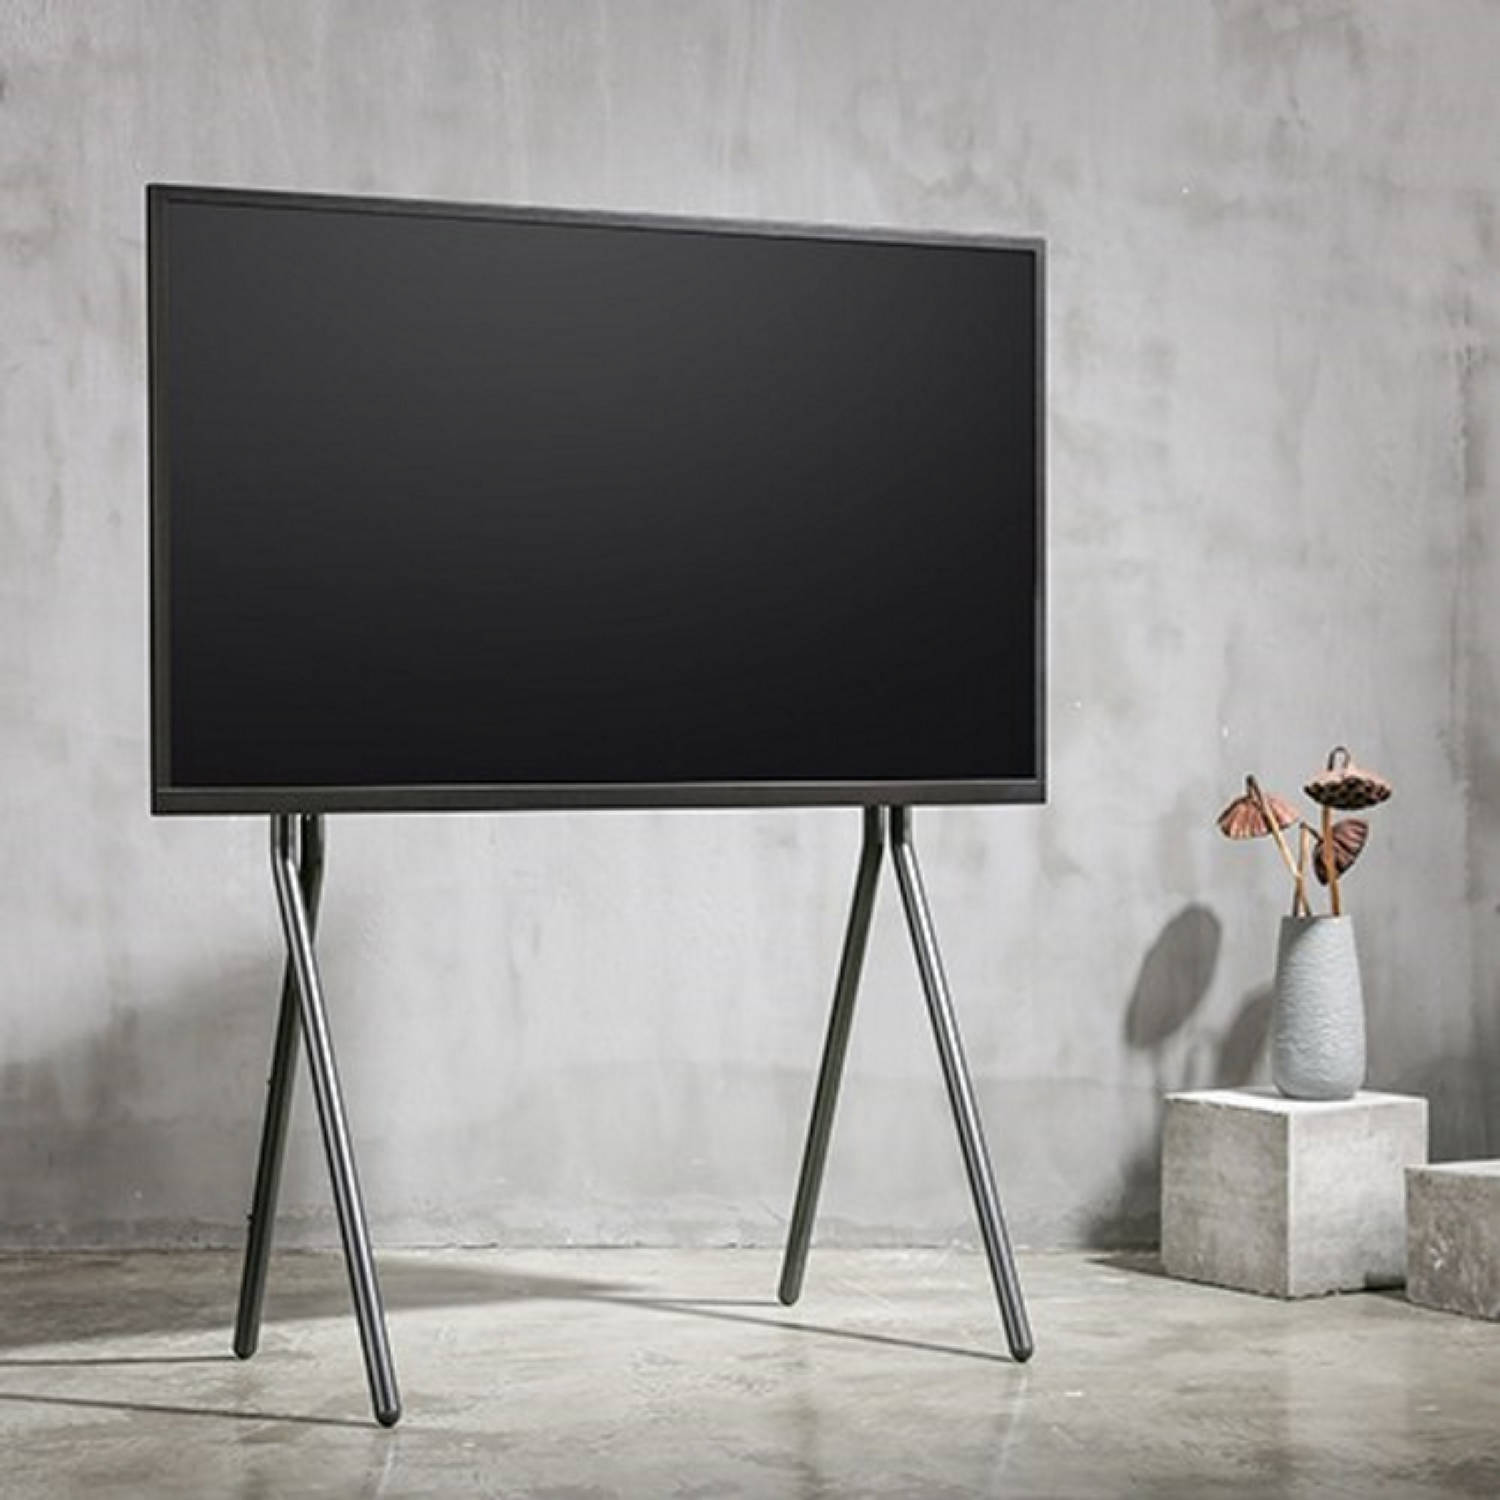 Graf ginder steen Tv statief schildersezel design - tv standaard studio - tot 70 inch  beeldscherm | Blokker